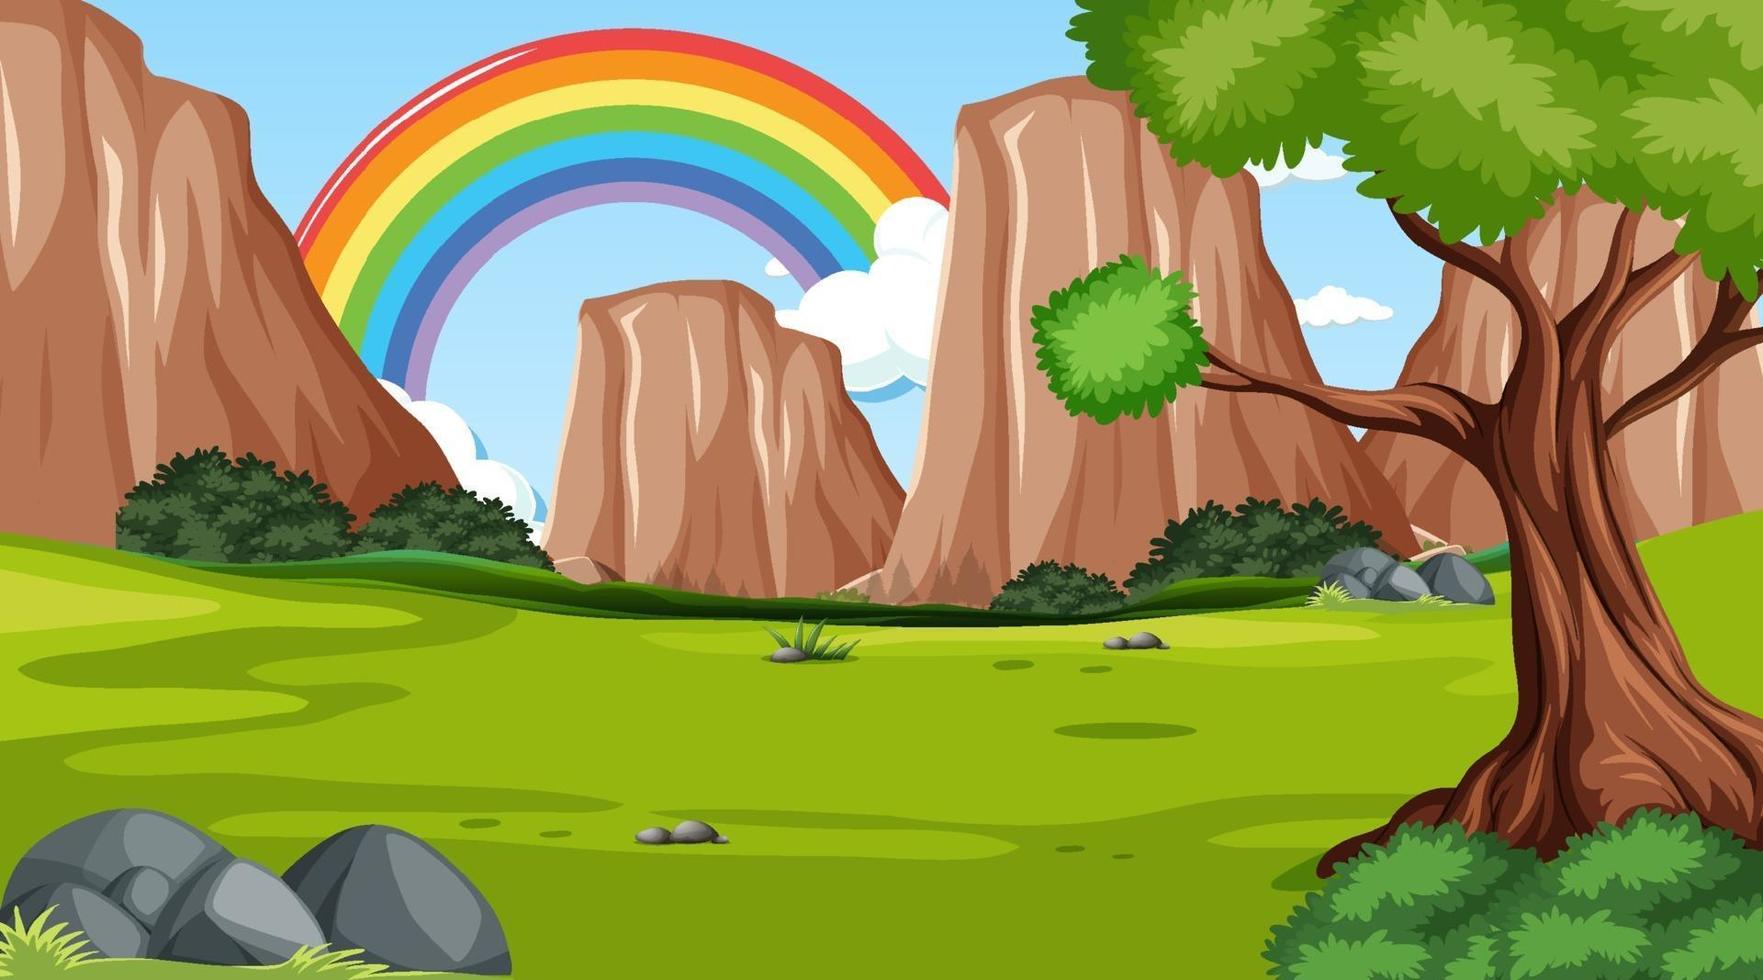 sfondo della scena della natura con arcobaleno nel cielo vettore